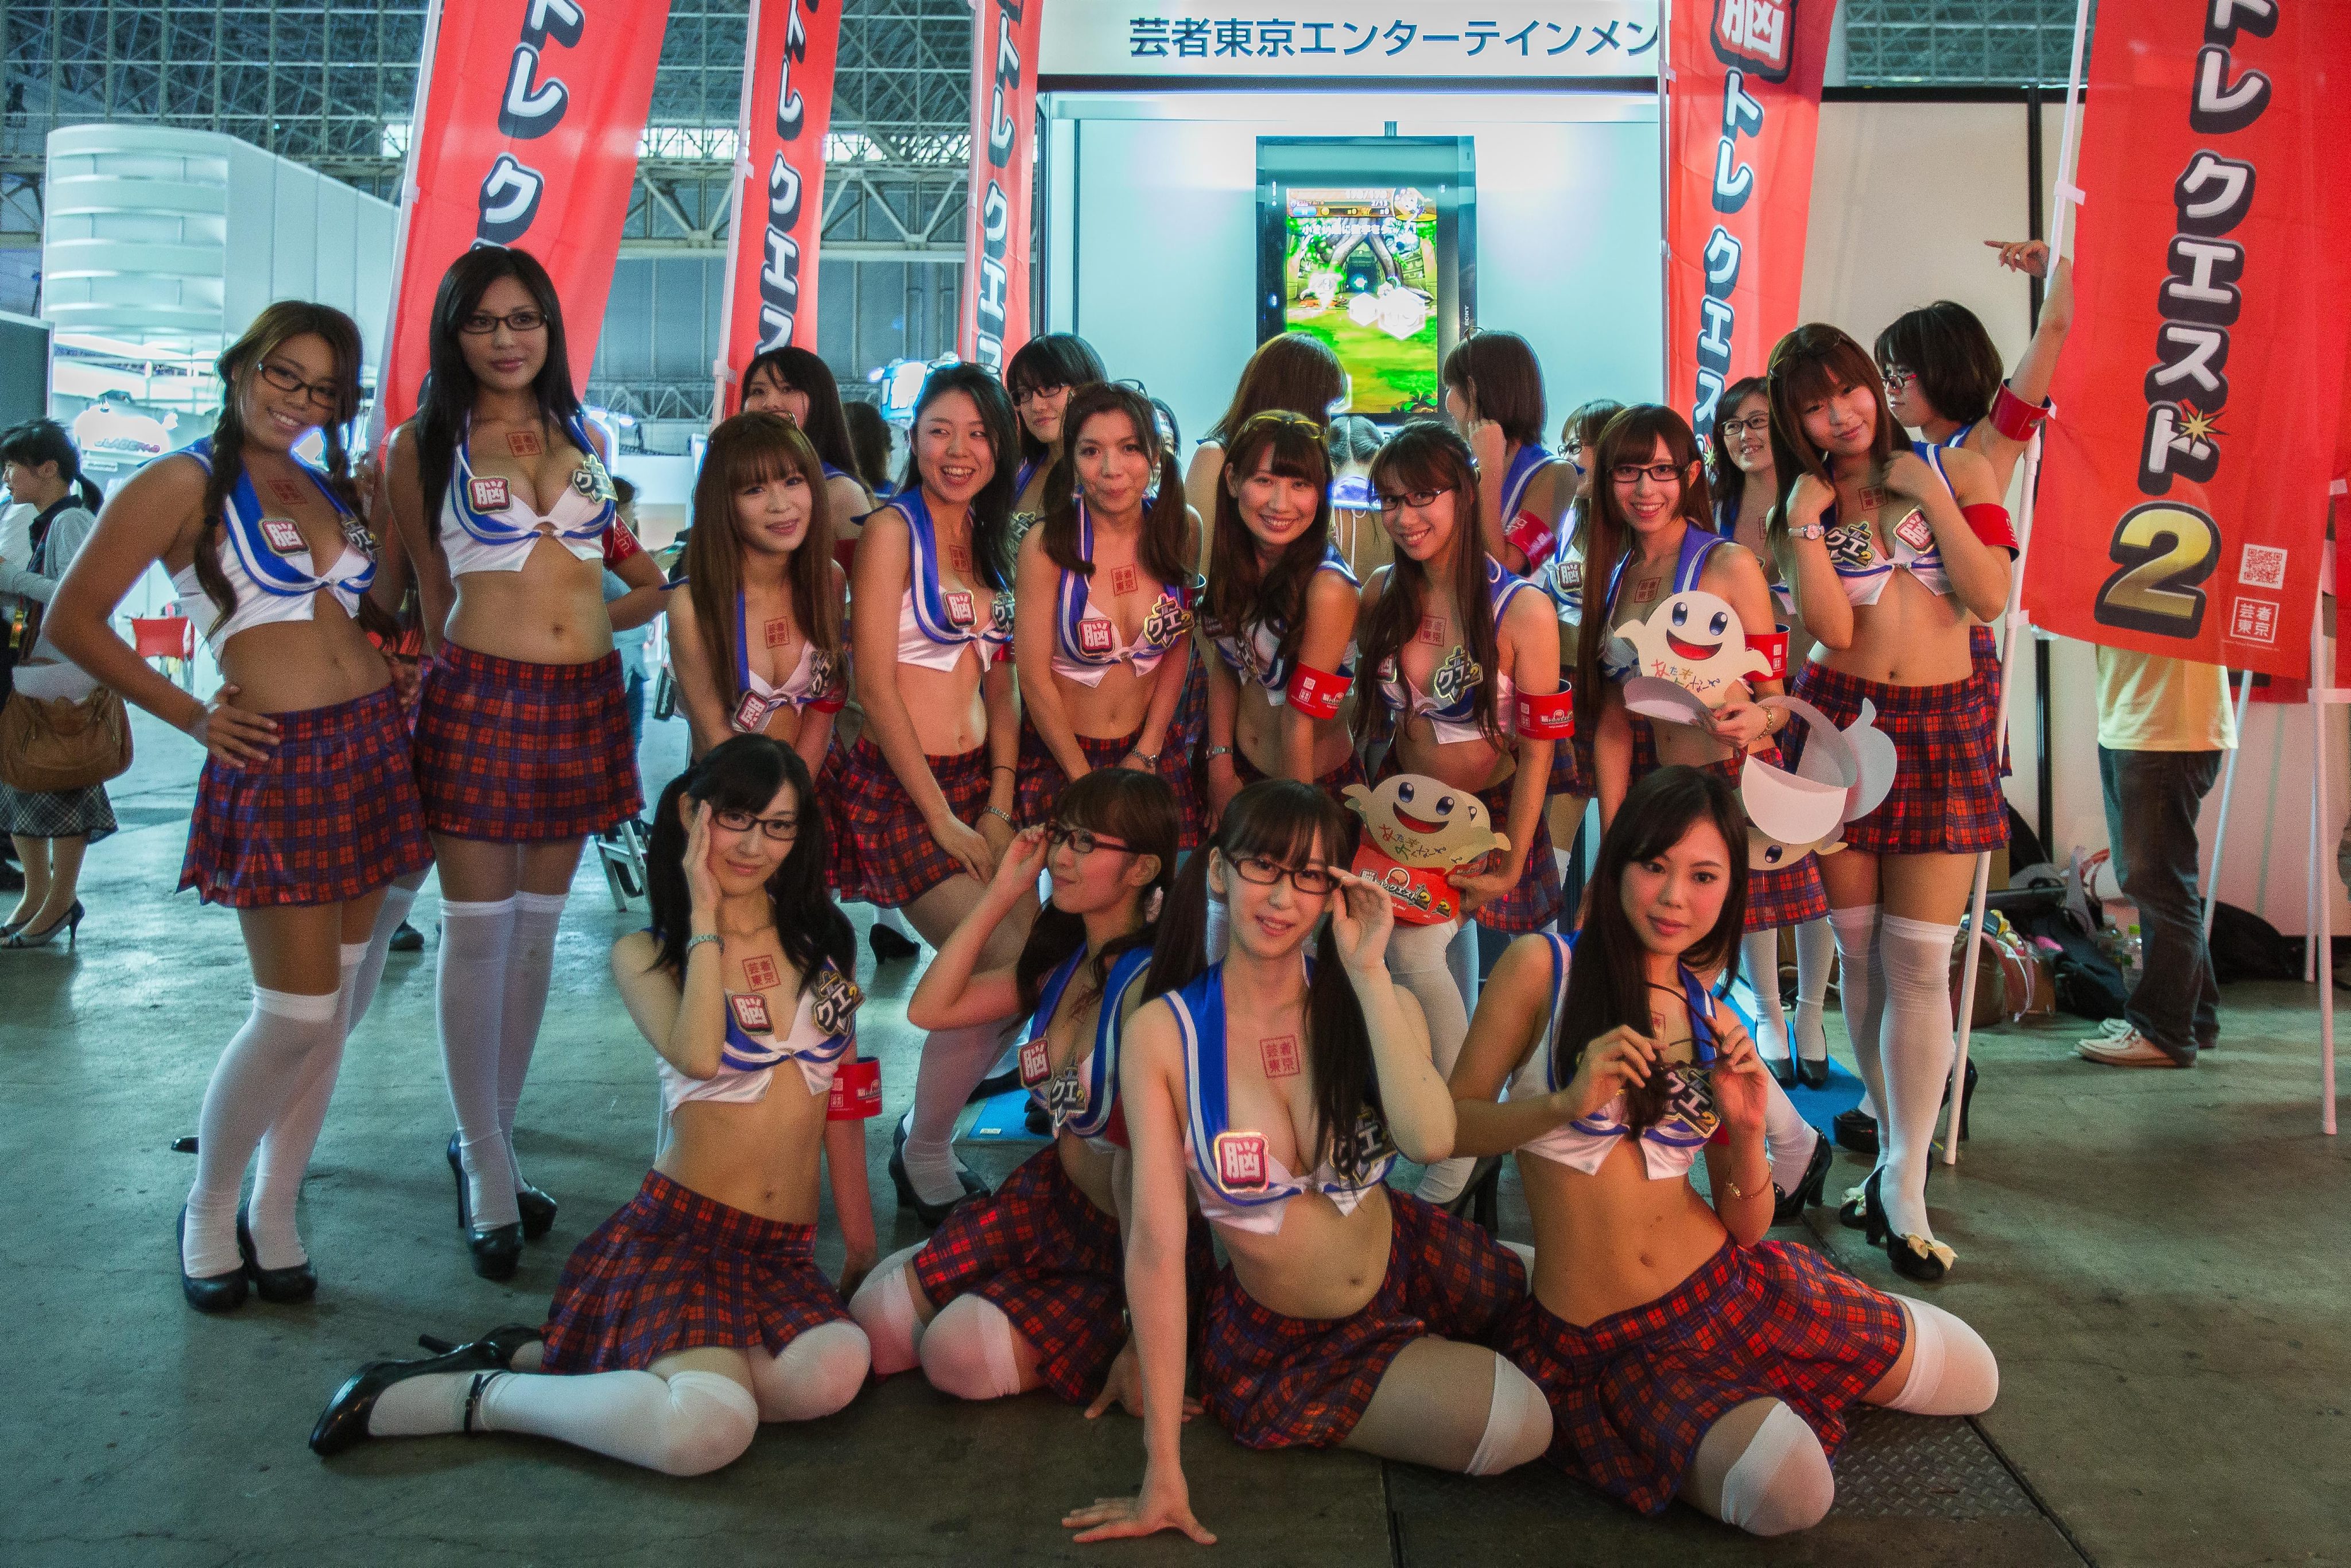 Започна изложението Tokyo Game Show (снимки). 